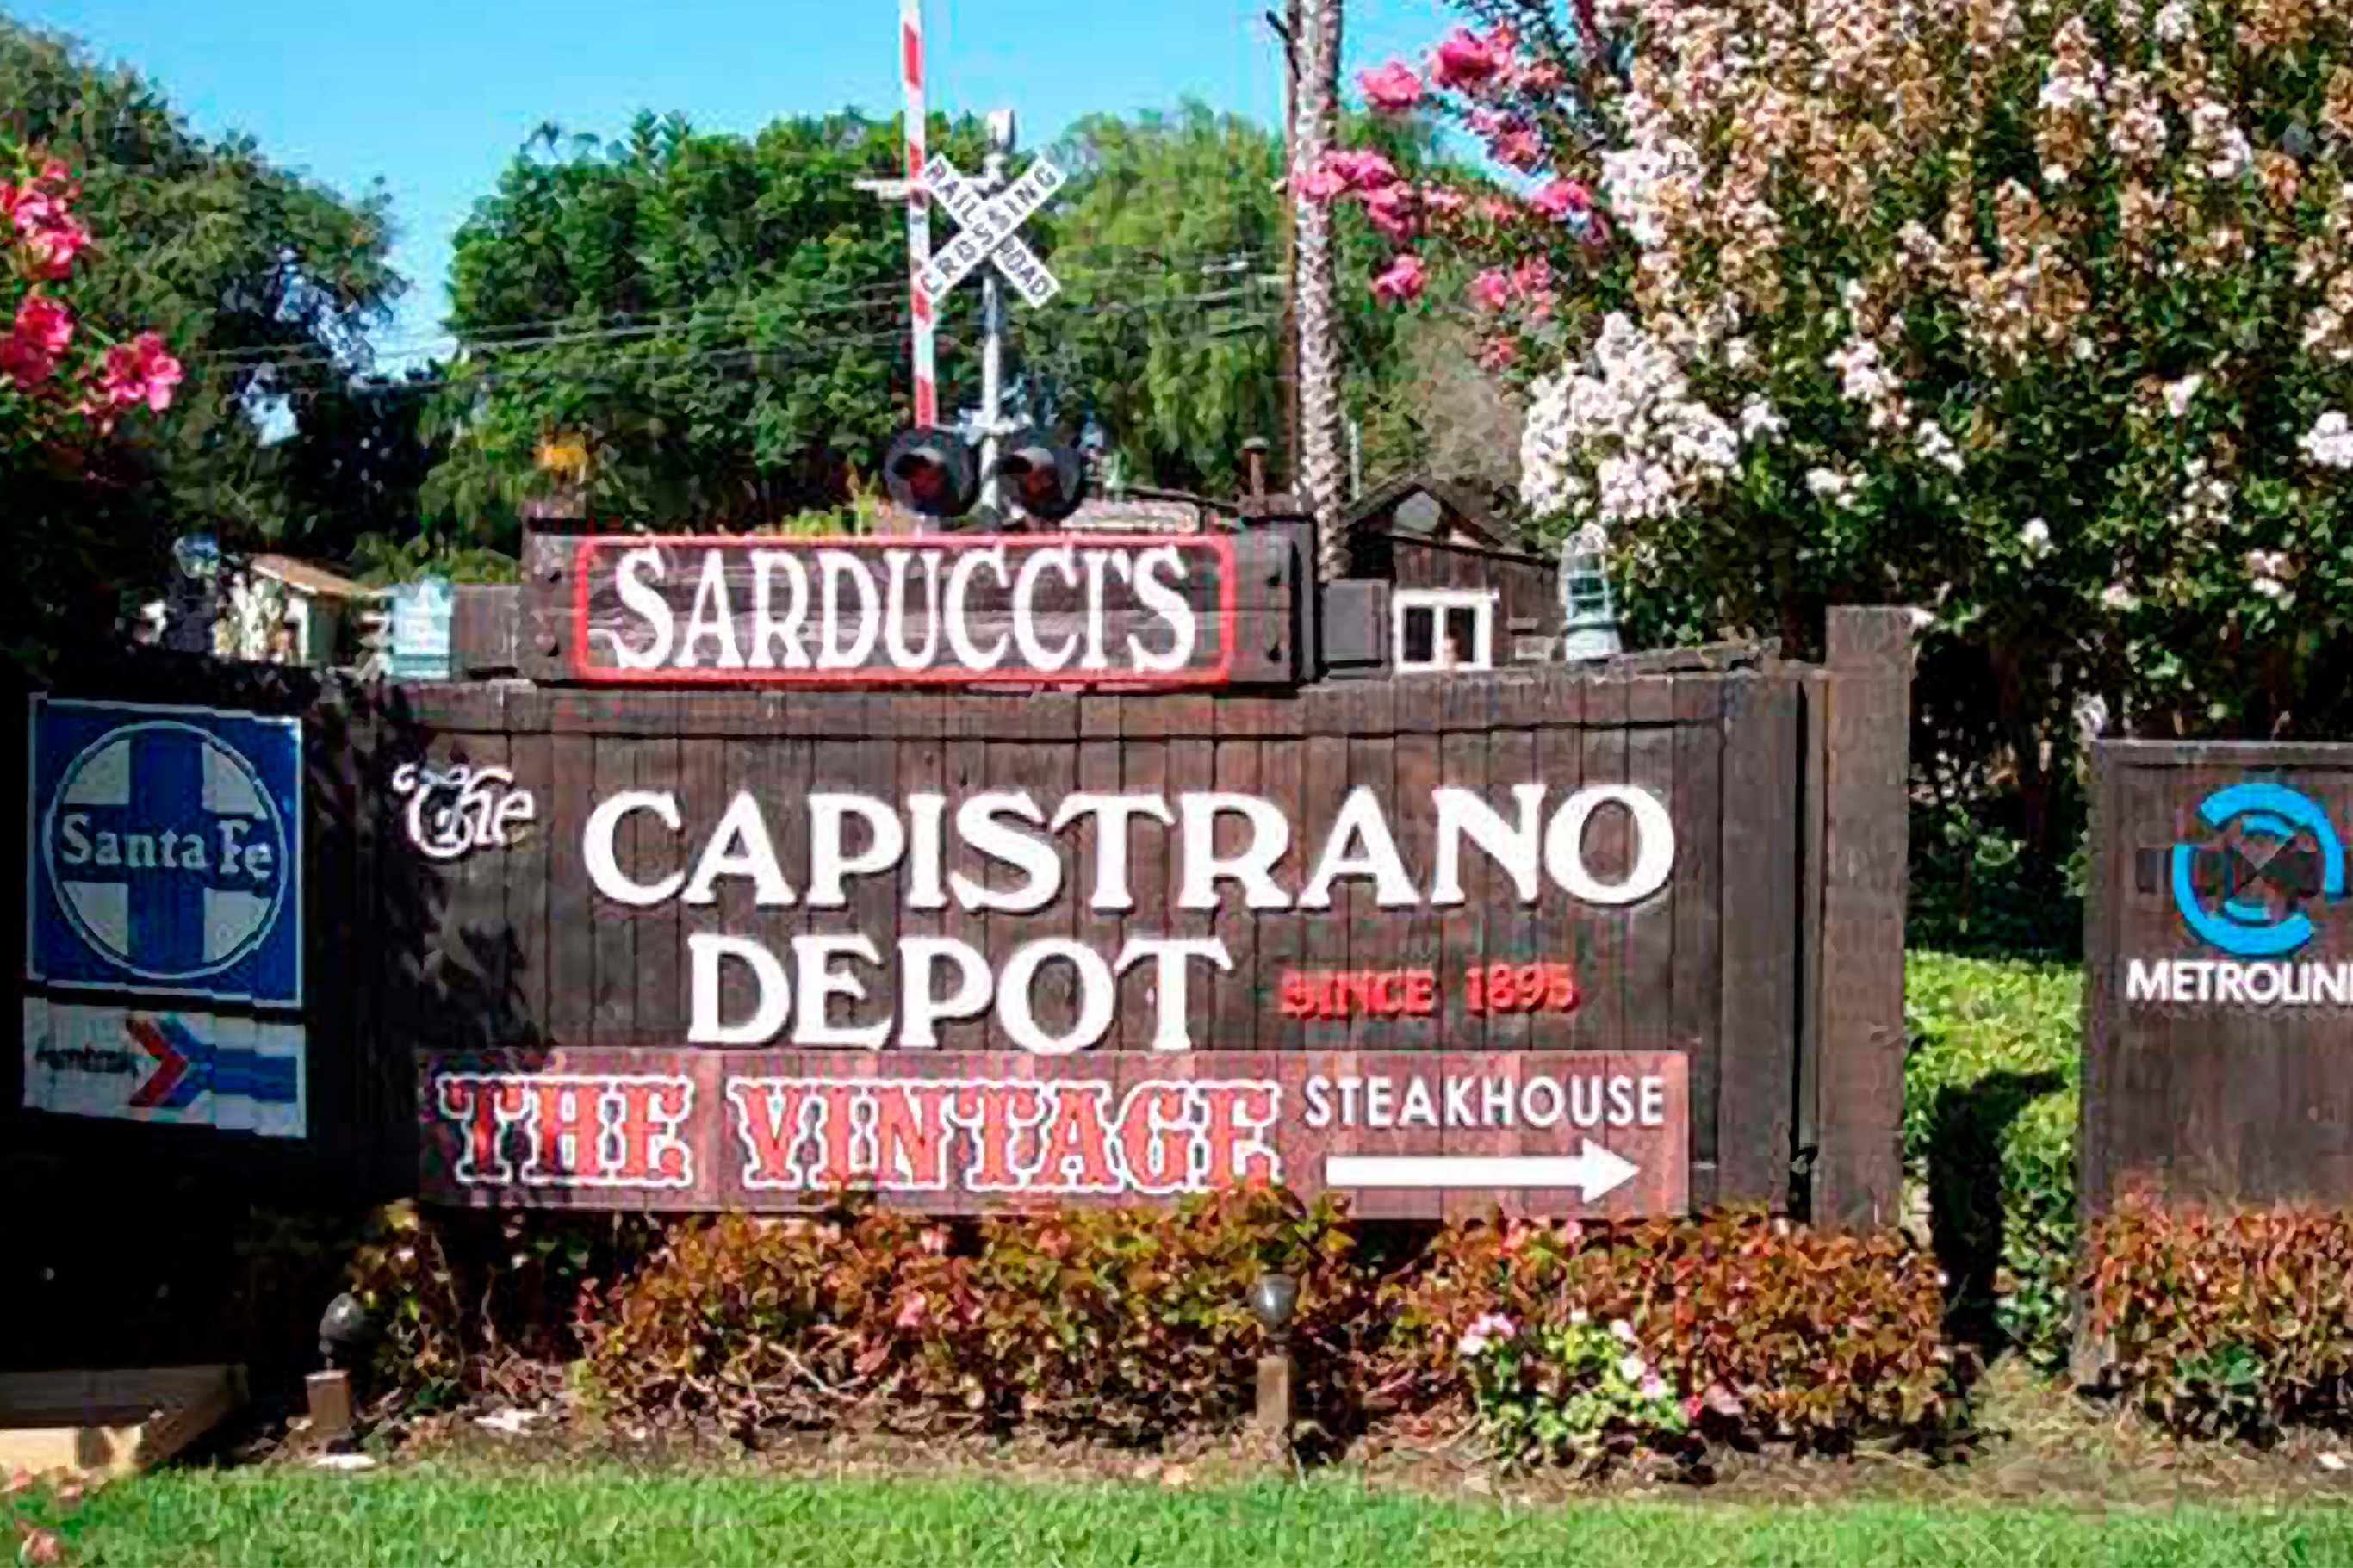 The Capistrano Depot sign in San Juan Capistrano